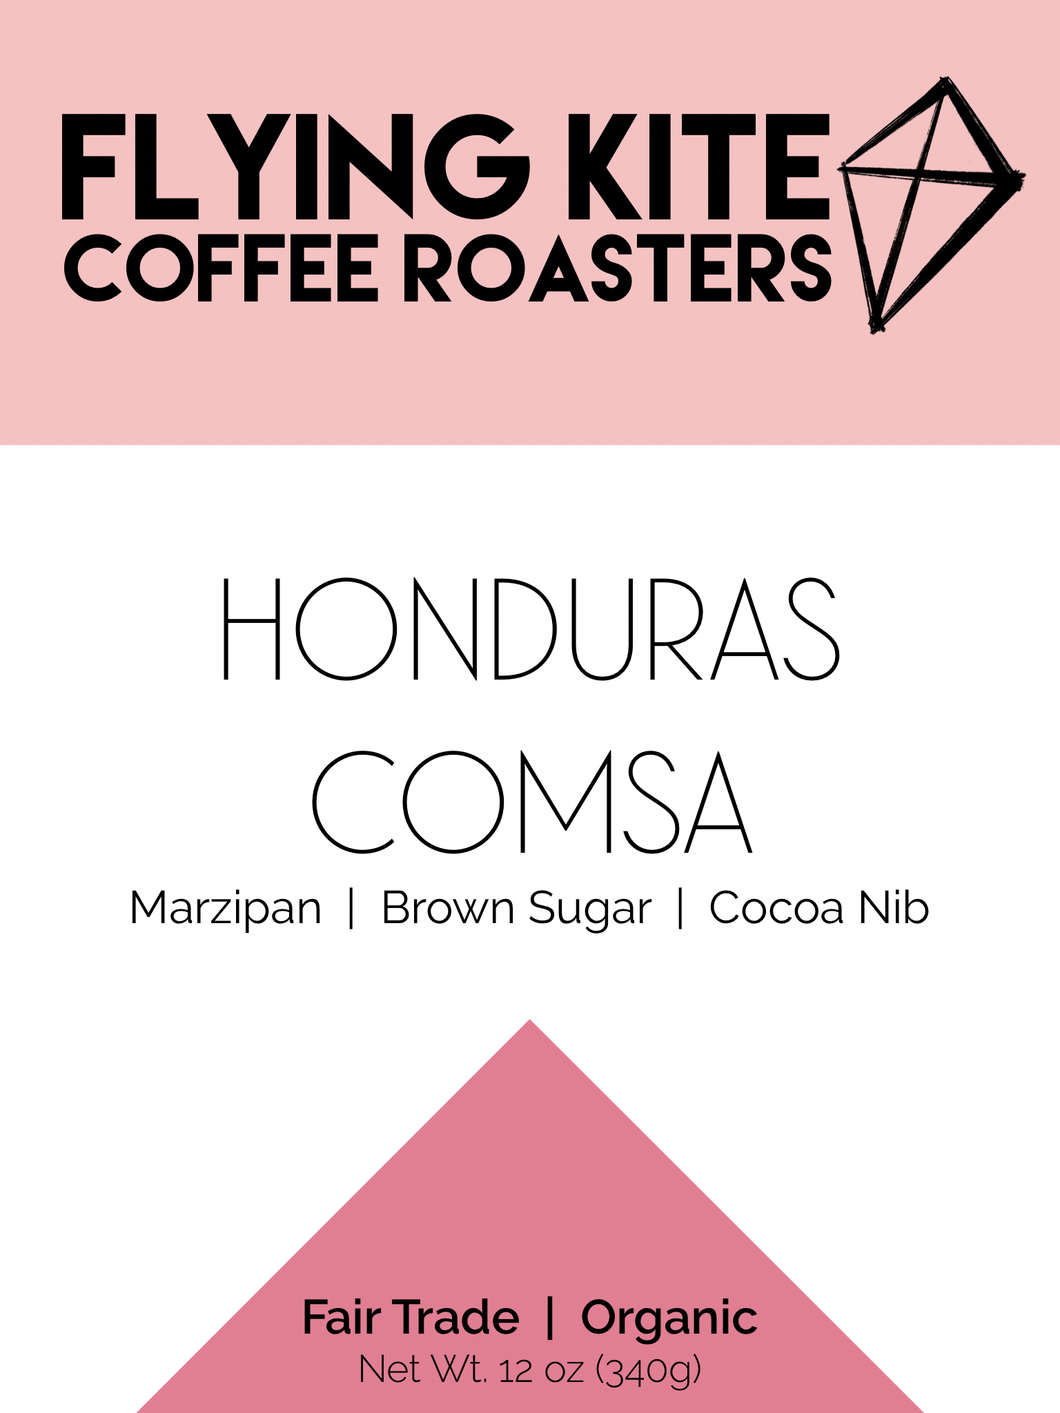 Honduras COMSA